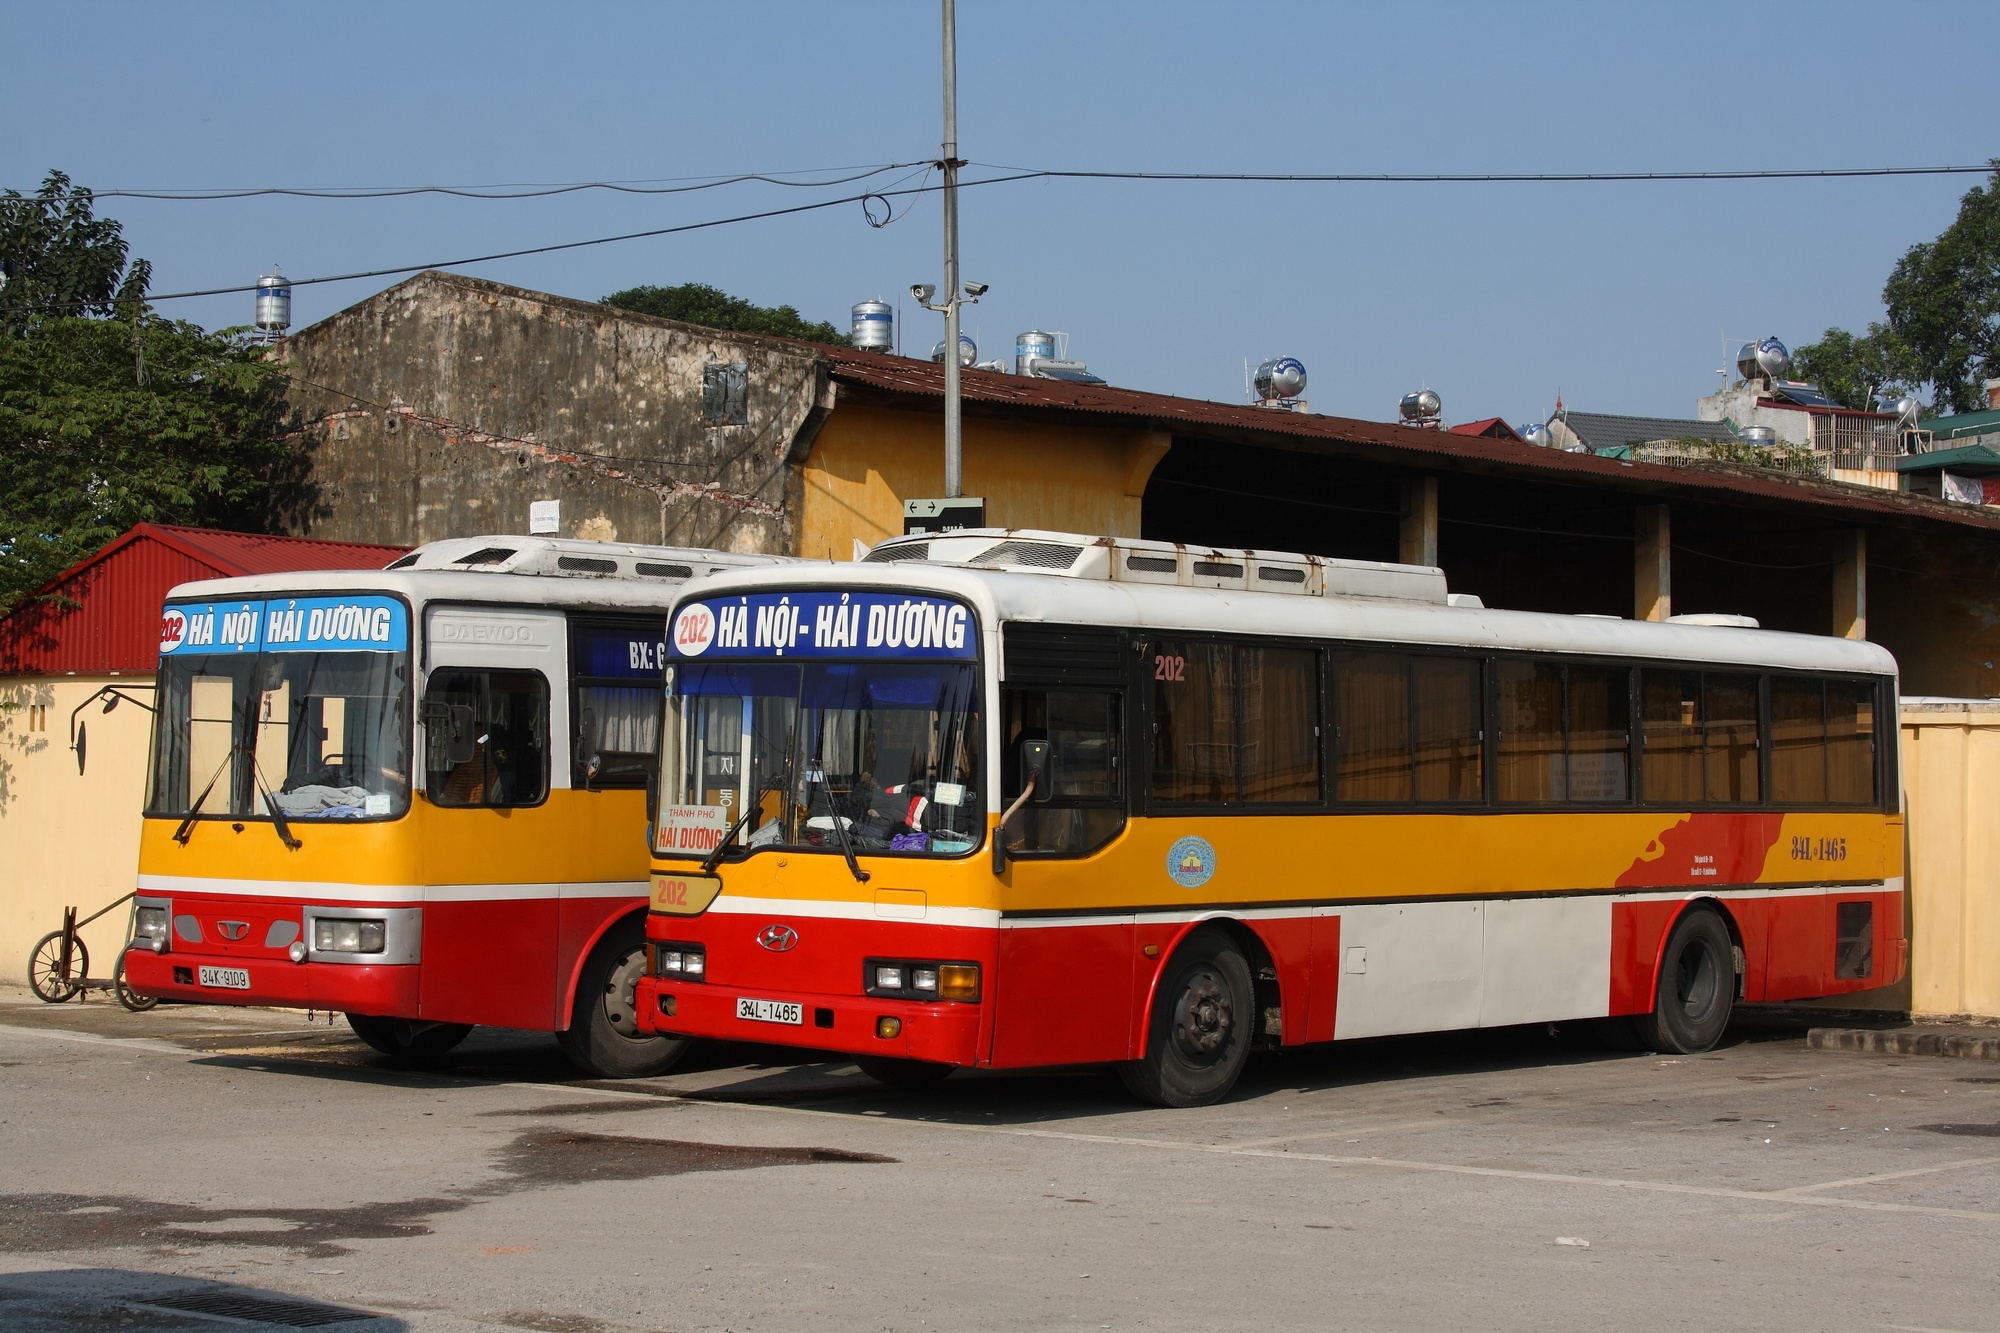 Xe bus số 202 từ Hà Nội đi Hải Dương